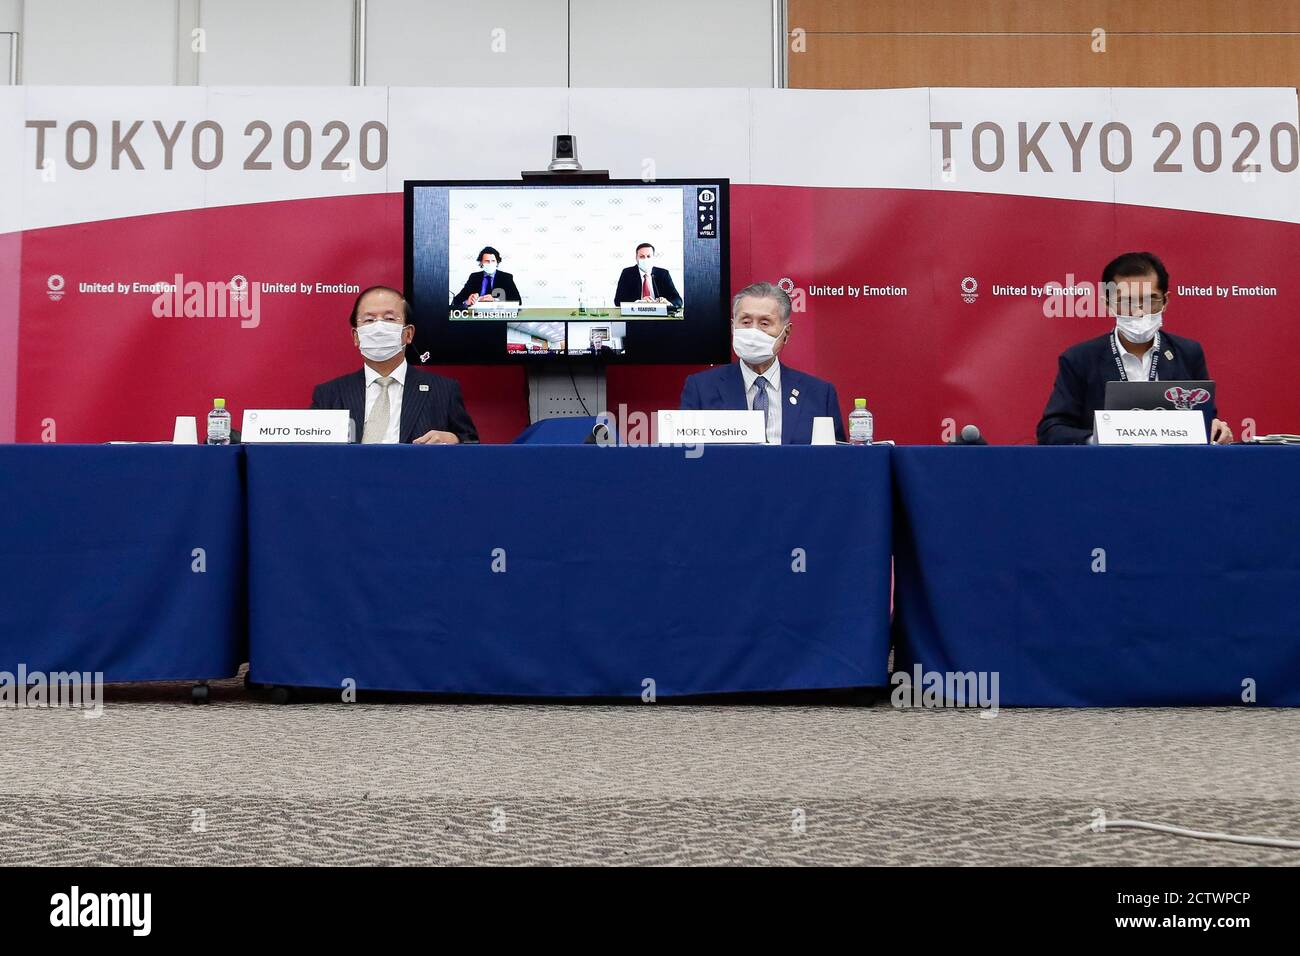 (200925) -- TOKIO, 25. September 2020 (Xinhua) -- Yoshiro Mori (C), Präsident des Organisationskomitees der Olympischen und Paralympischen Spiele in Tokio (Tokio 2020), Toshiro Muto (L), CEO von Tokio 2020, Christophe Dubi (auf der Leinwand, L), Direktor des Internationalen Olympischen Komitees (IOC) und weitere Mitglieder des IOC und Tokio 2020, Mit Gesichtsmasken an einer gemeinsamen Pressekonferenz zwischen dem Internationalen Olympischen Komitee (IOC) und Tokio 2020 im Anschluss an die 10. IOC Koordinierungskommission für die Spiele der XXXII Olympiade - Tokio 2020 in Tokio, Japan, 25. September 2020. (Rodrig Stockfoto